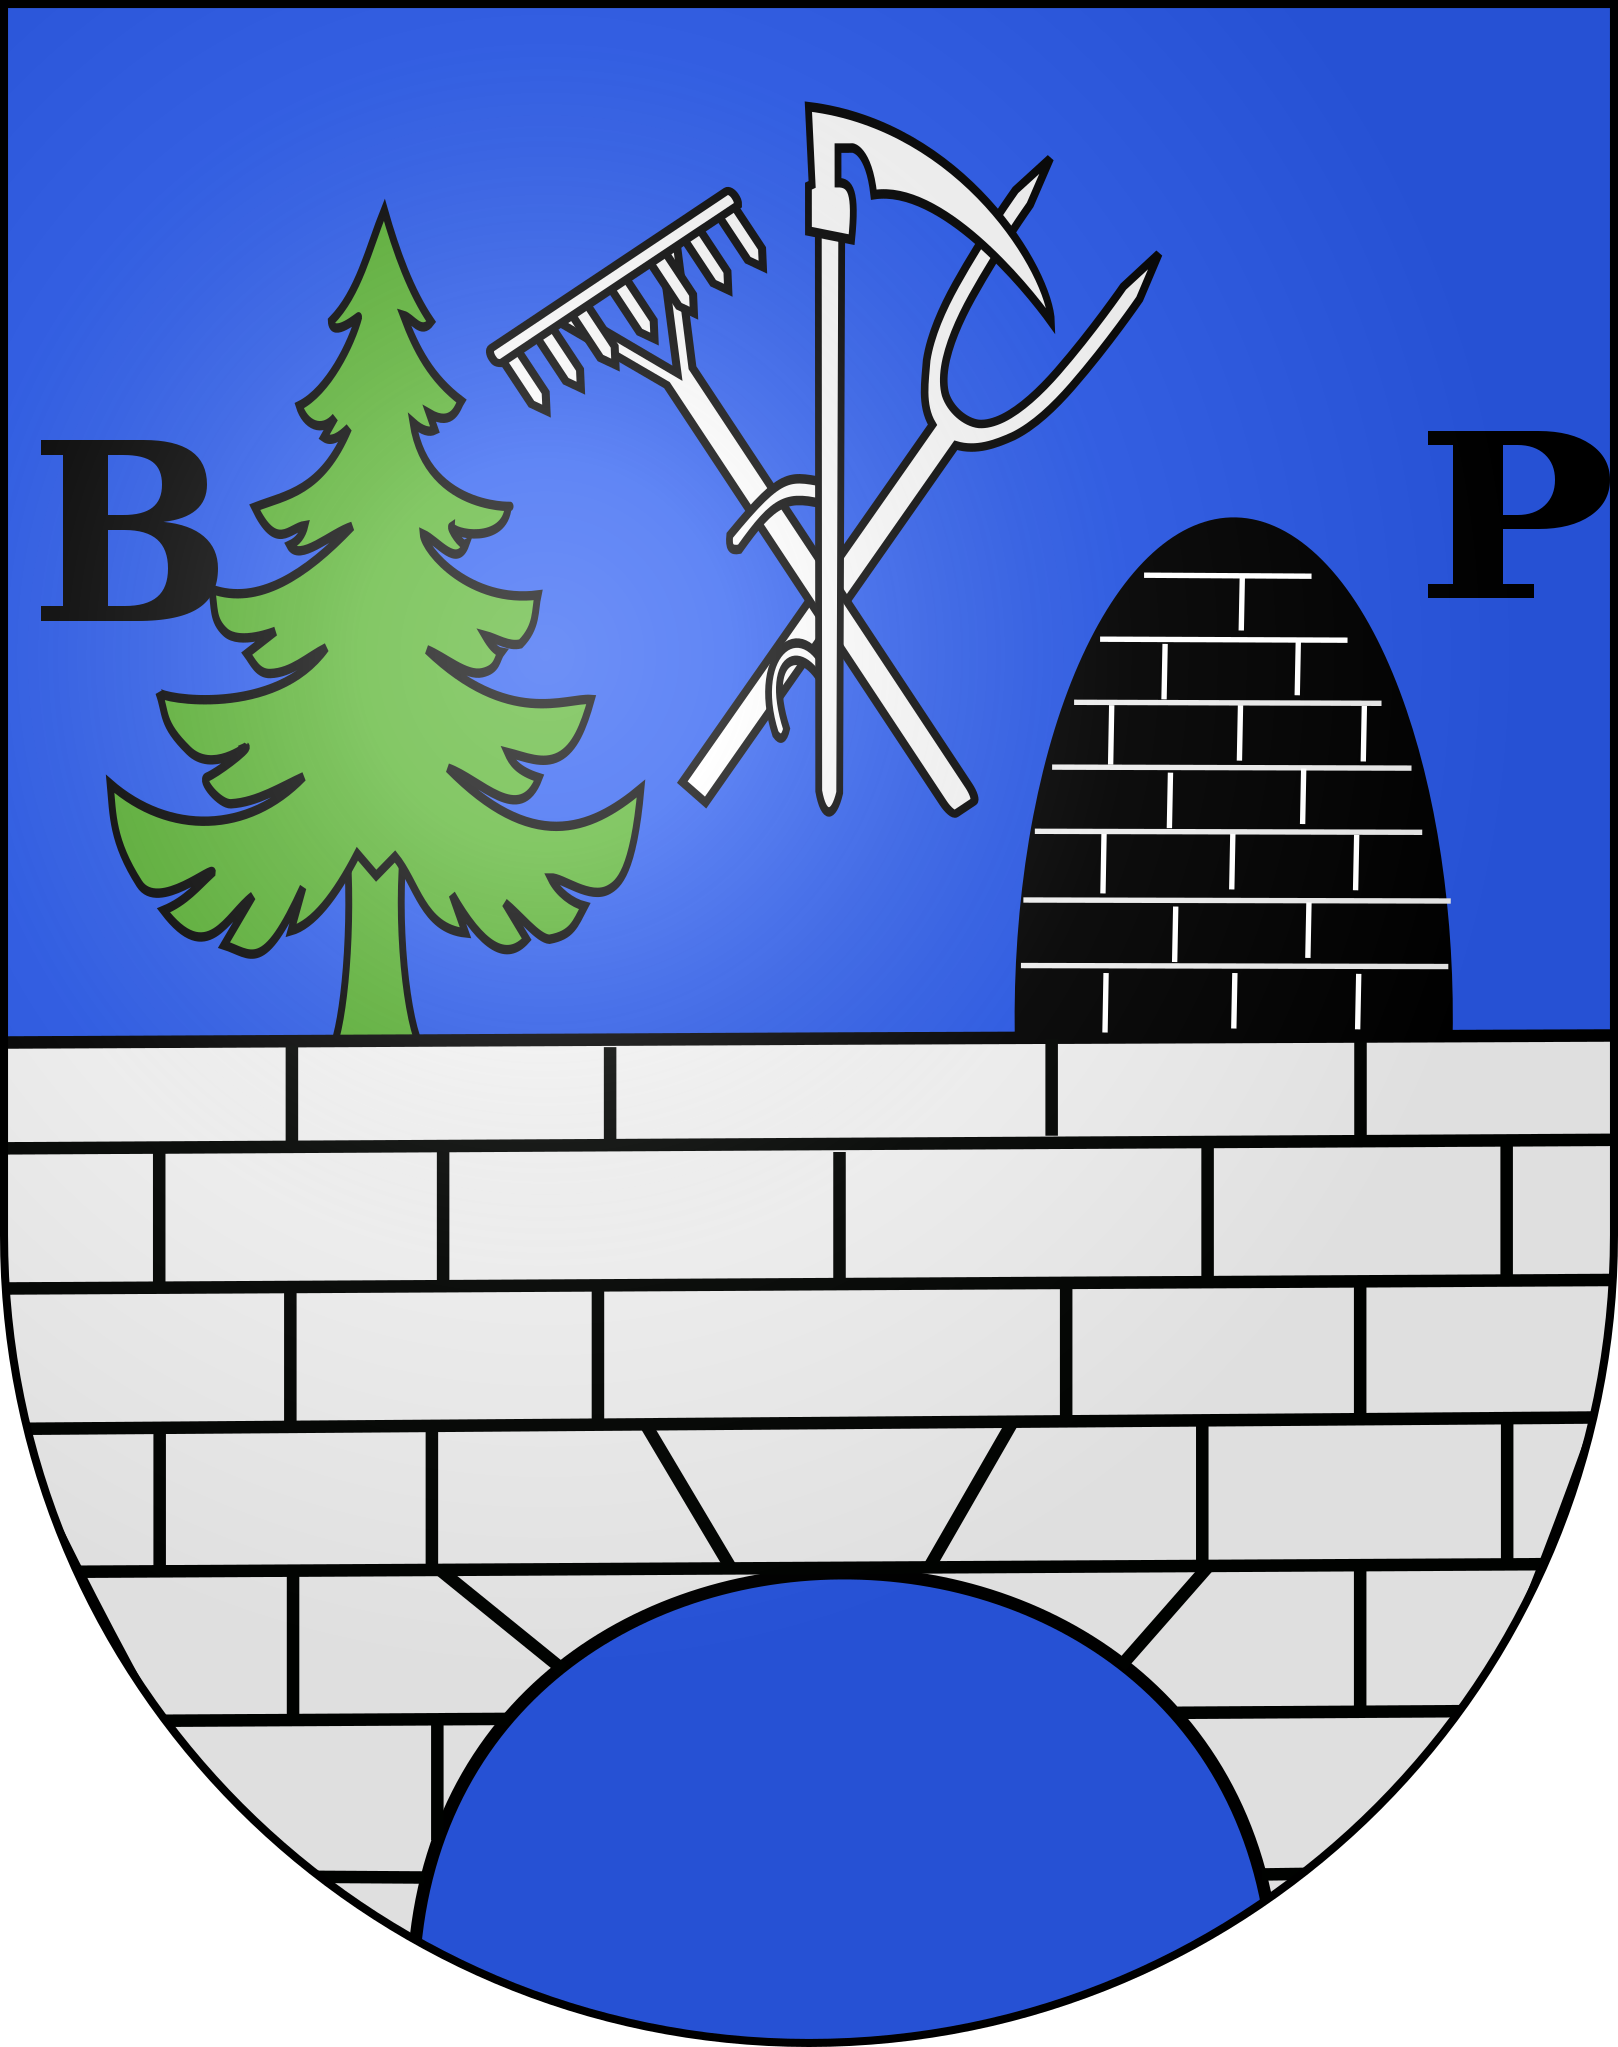 Brot-Plamboz logo